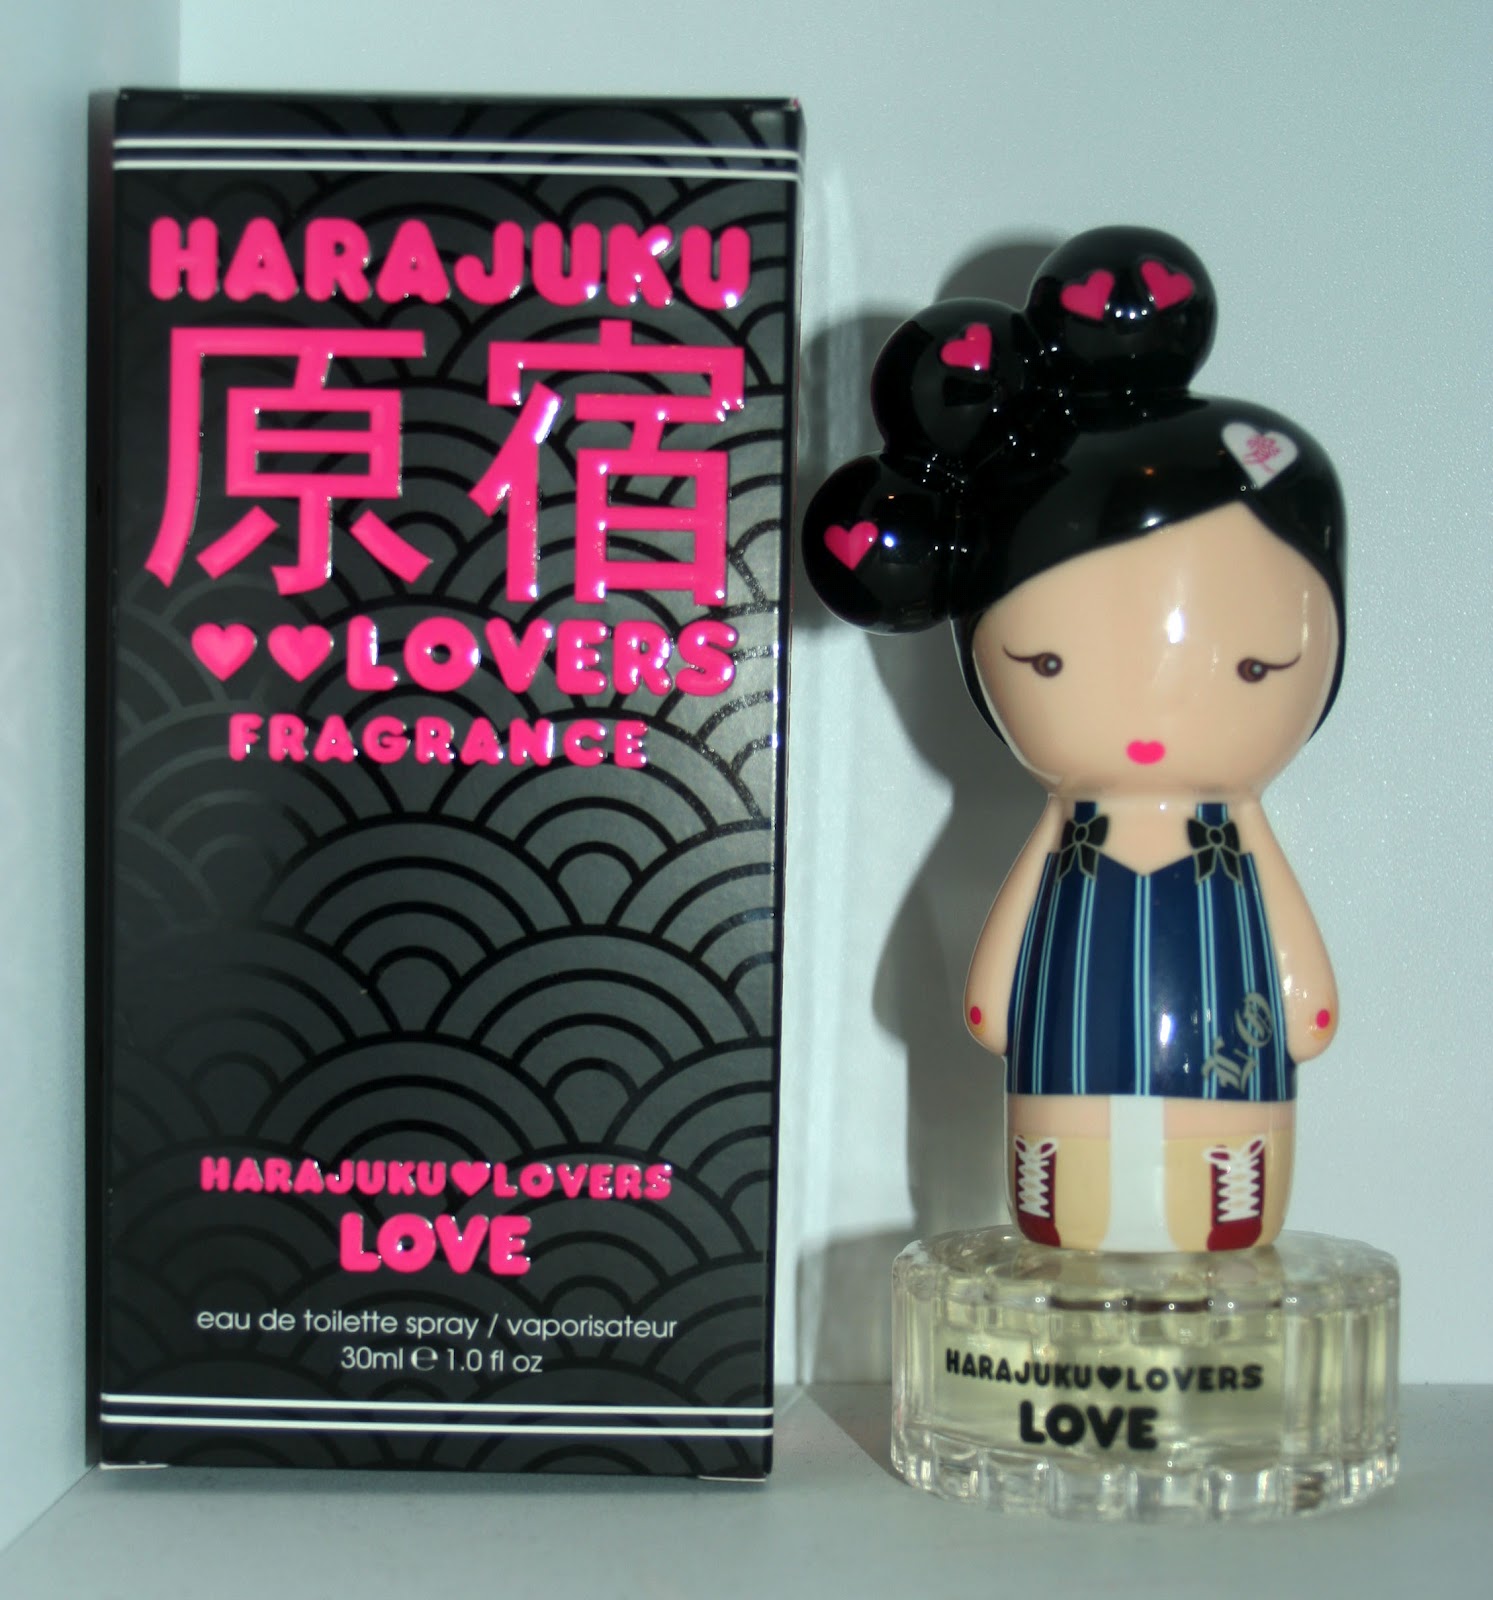 Лове ловер. Духи Harajuku lovers Wicked Style. Harajuku lovers наушники. Harajuku lovers Love. Perfume of Love игра.